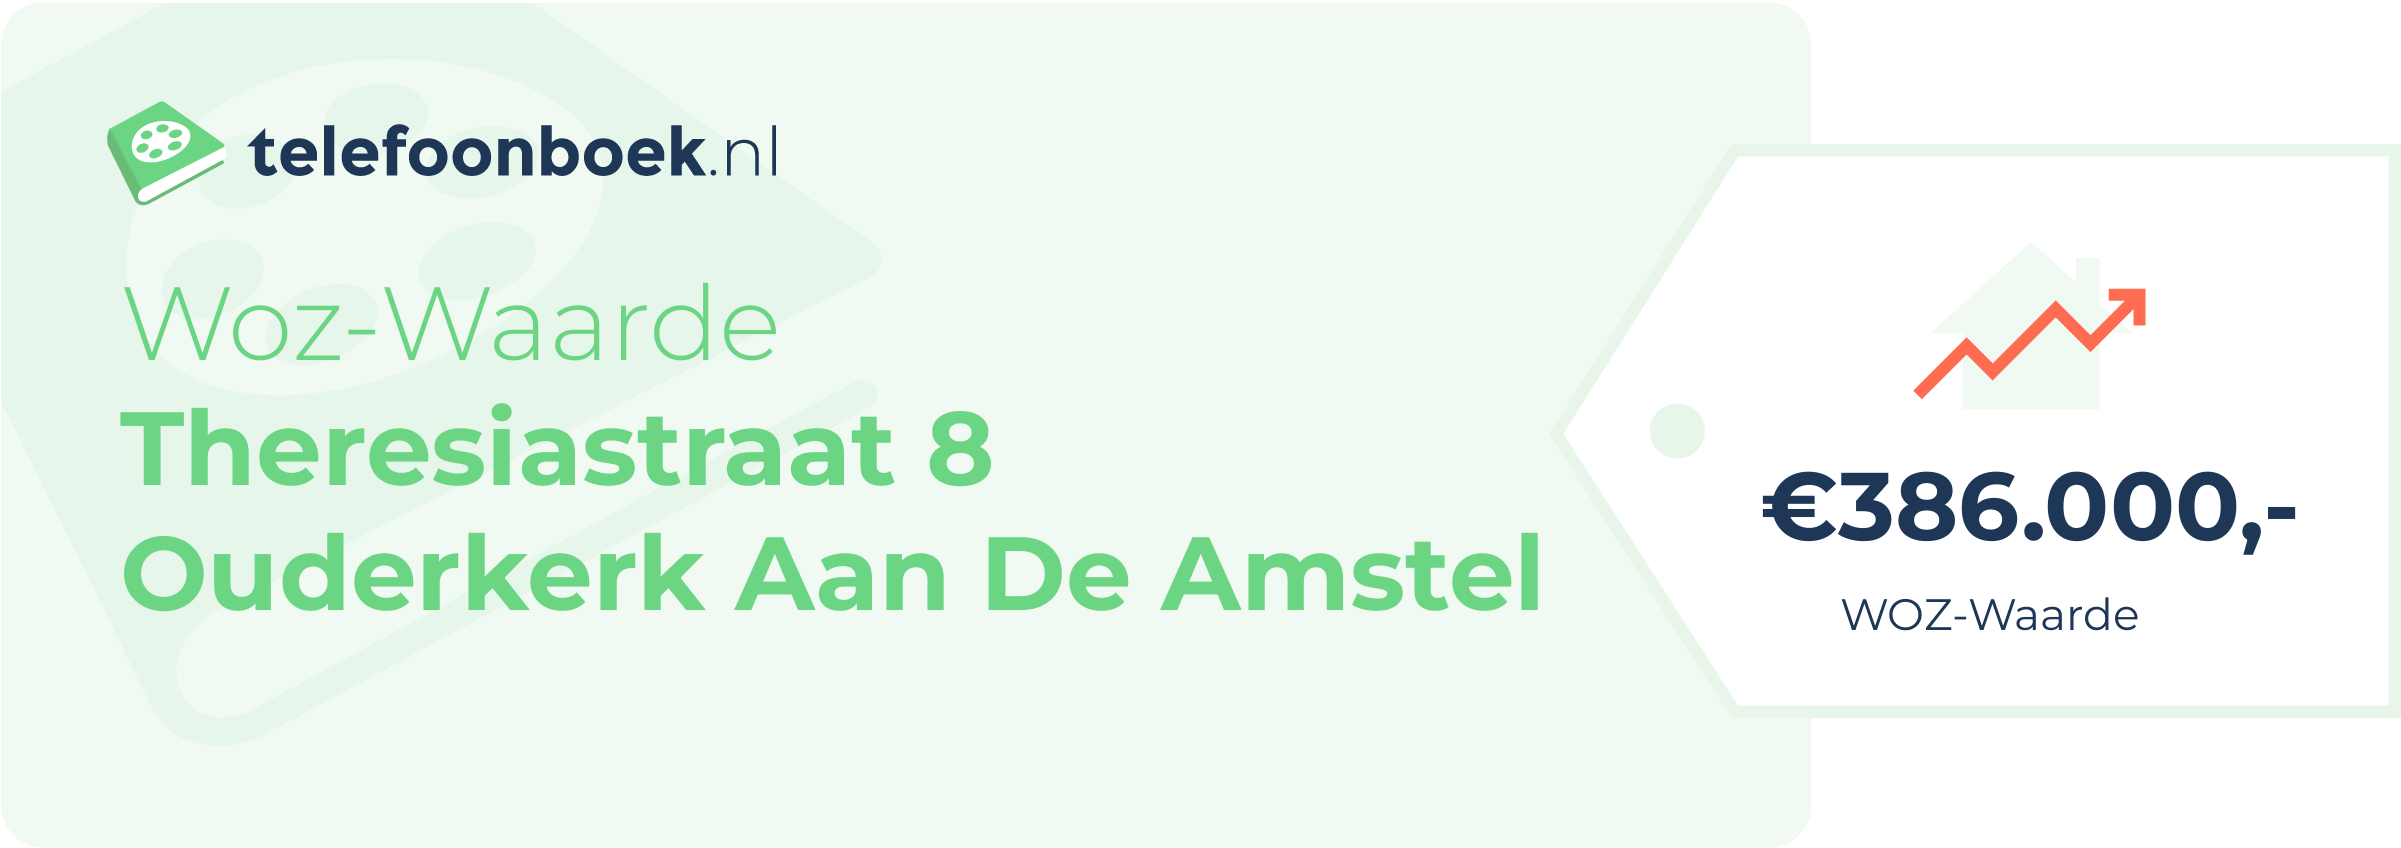 WOZ-waarde Theresiastraat 8 Ouderkerk Aan De Amstel